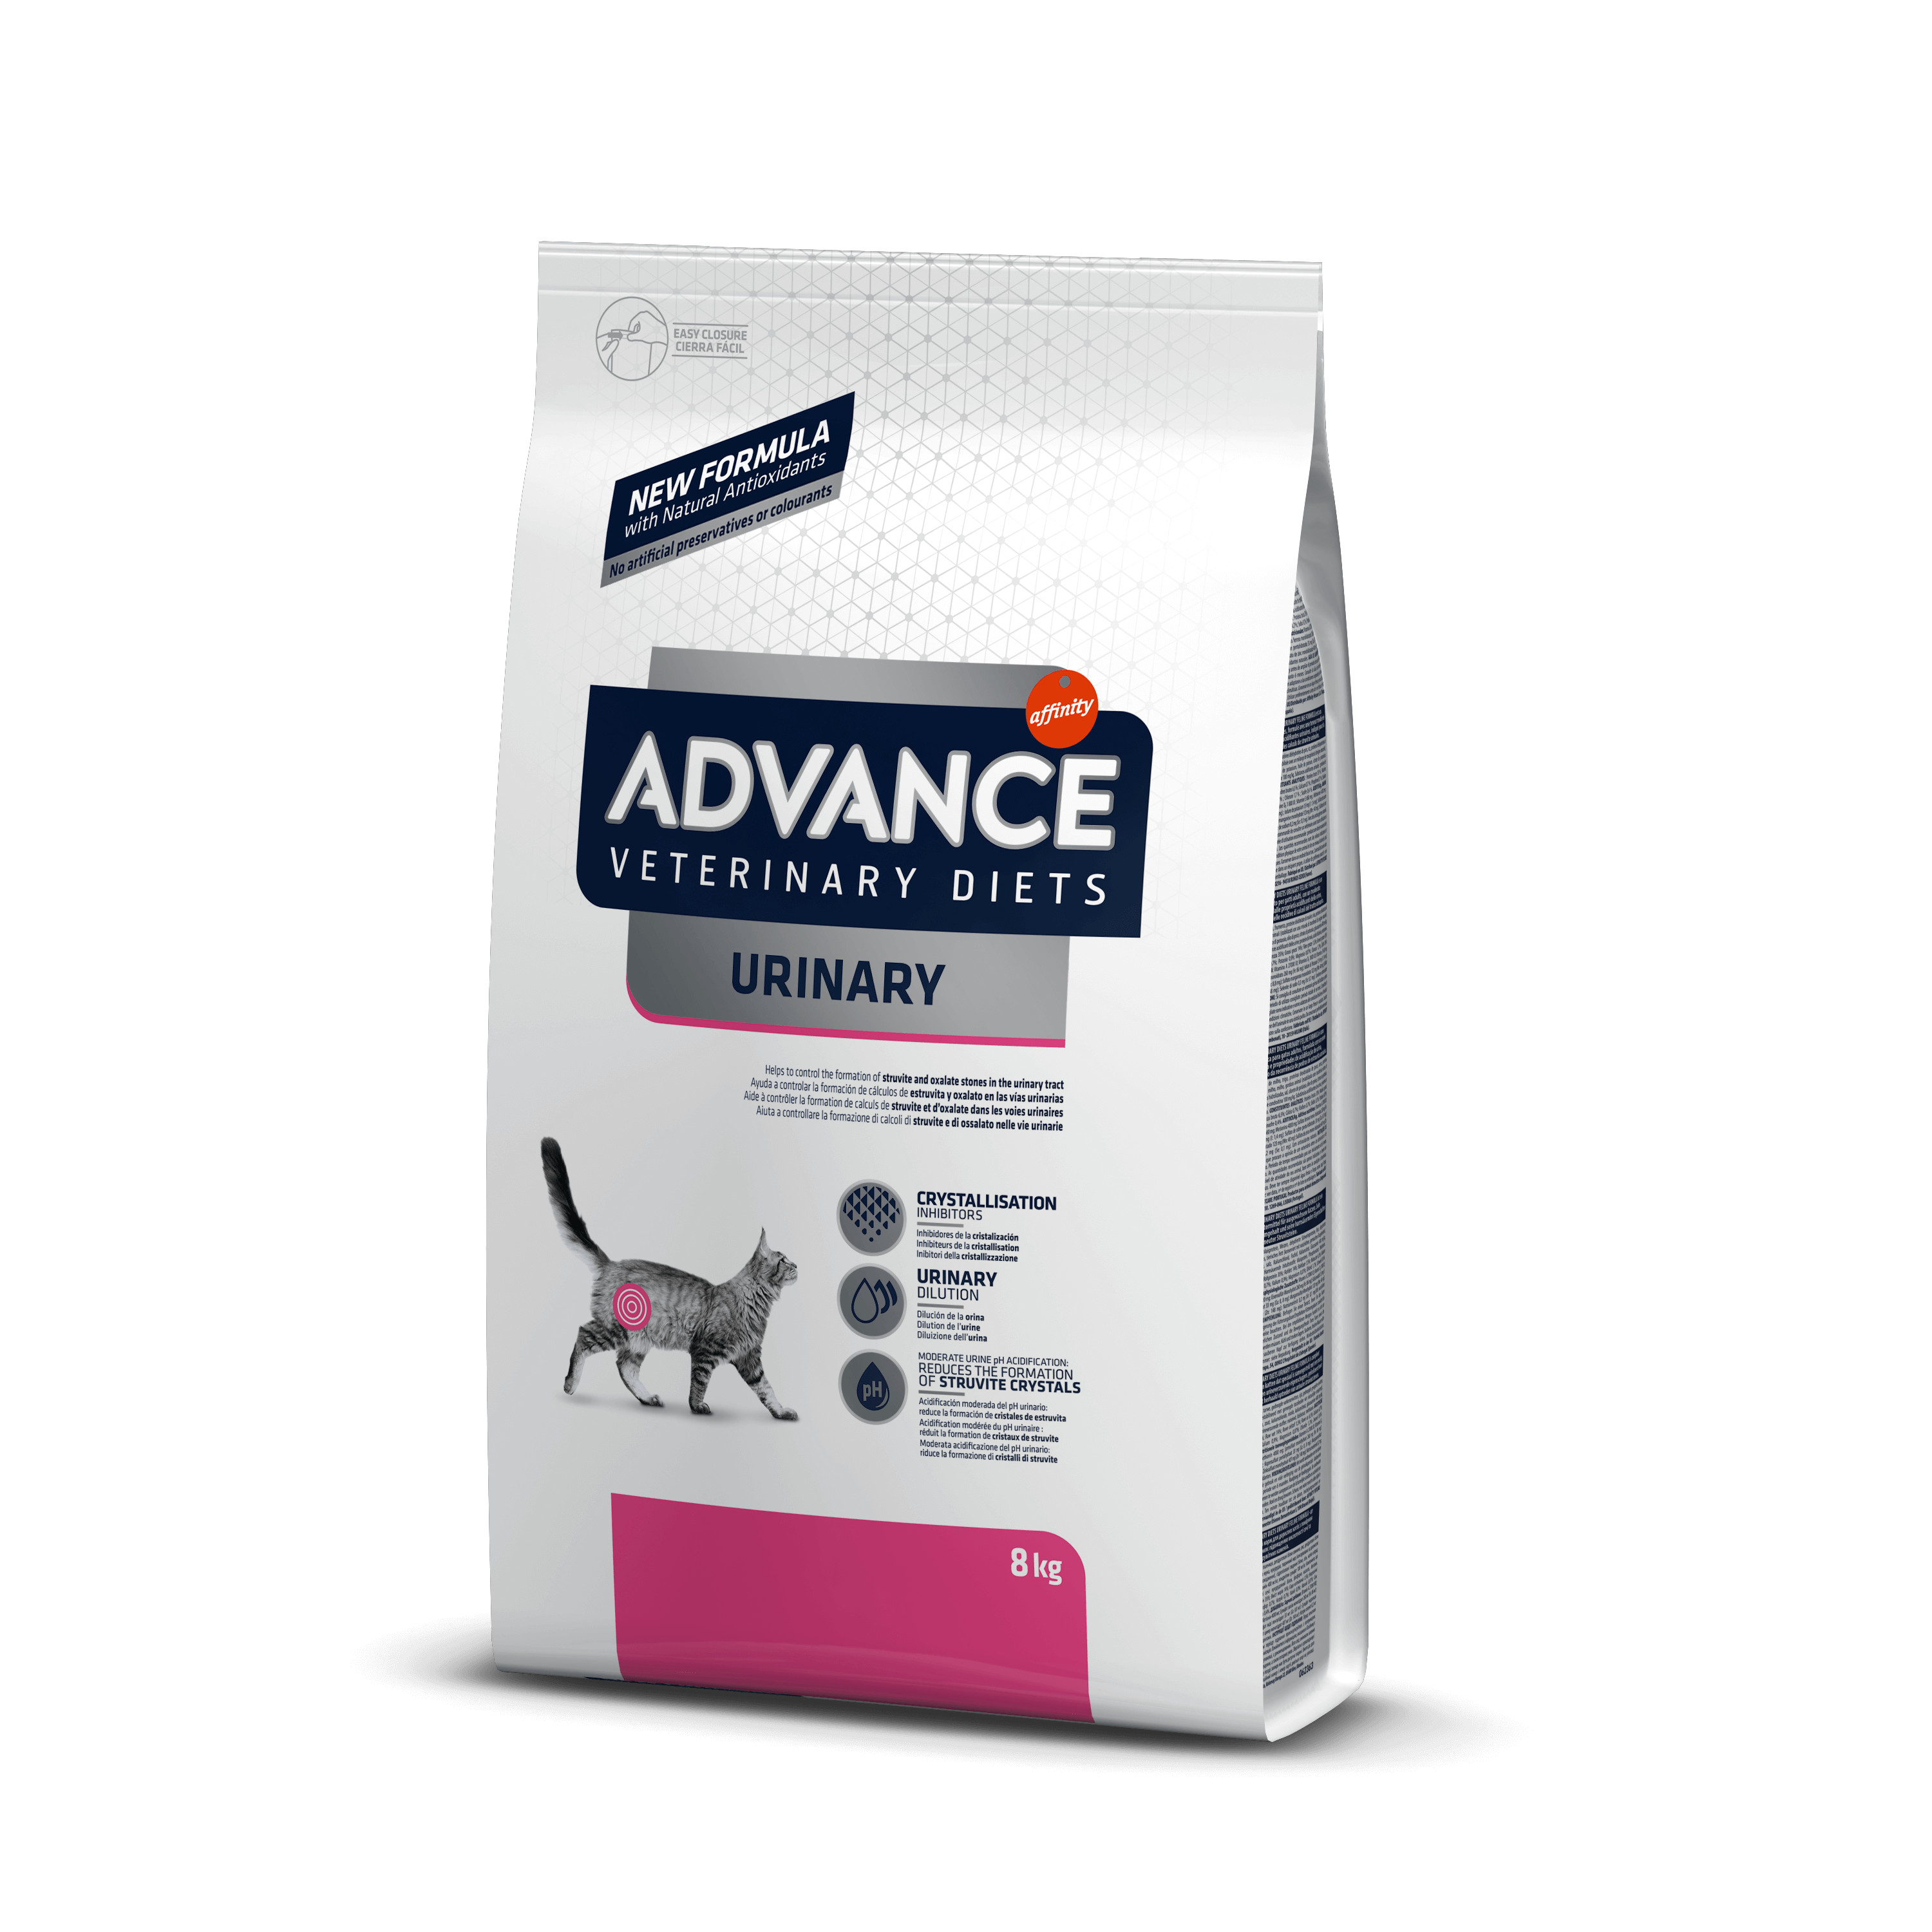 Afbeelding van 8 kg Advance Veterinary Diets Urinary kattenvoer